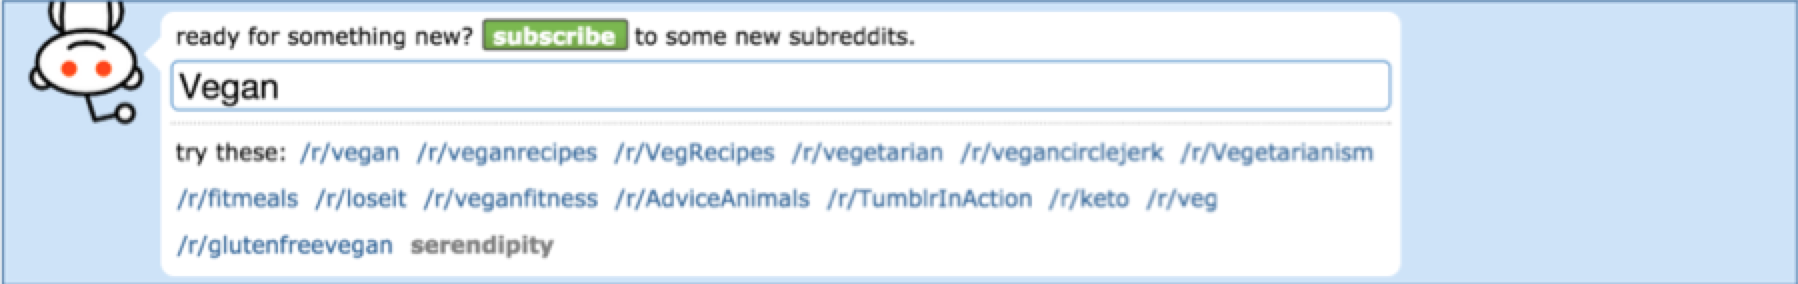 Vegan Subreddit